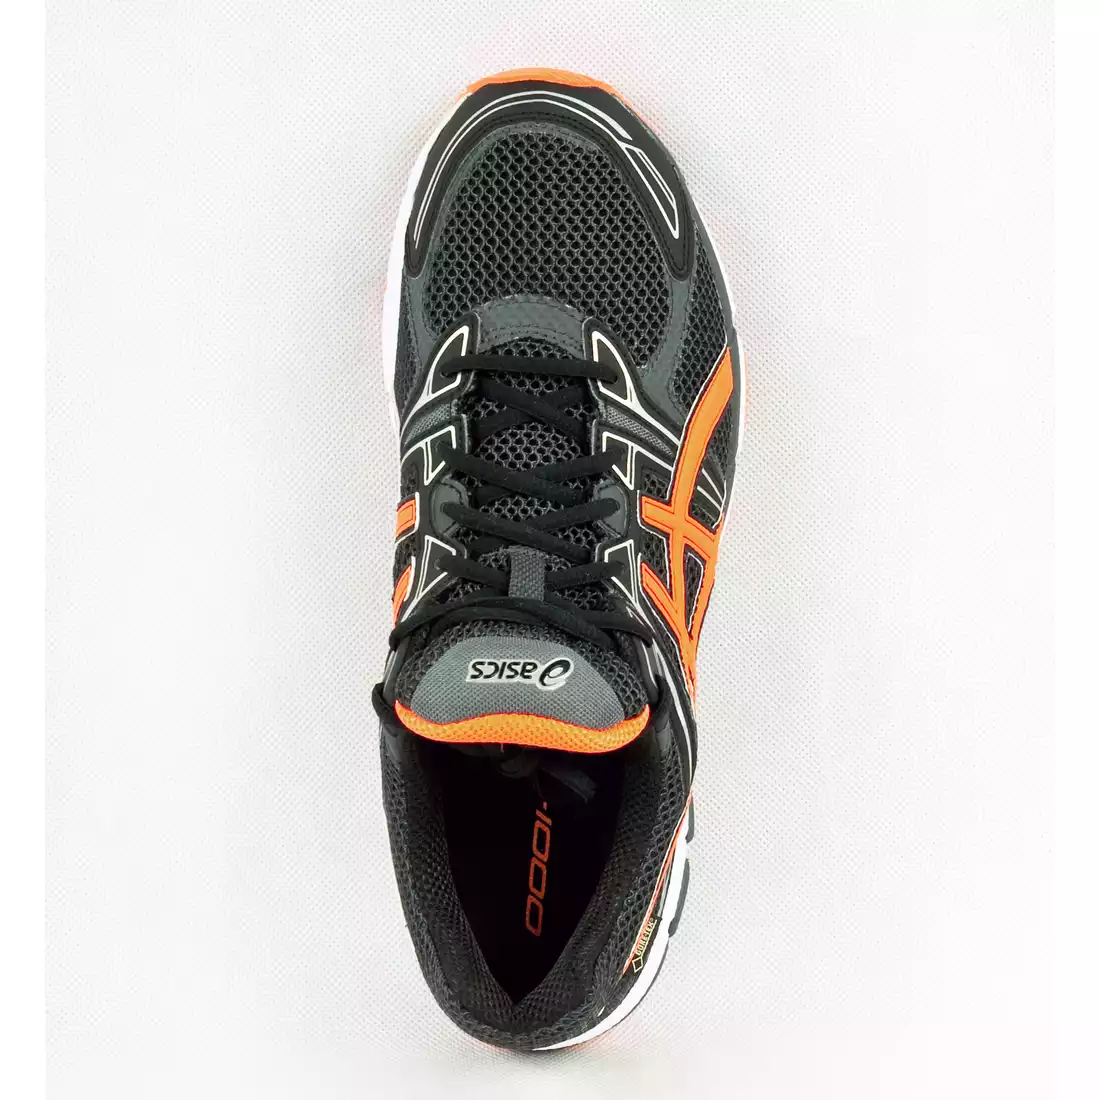 ASICS GT-1000 G-TX - buty do biegania 9030, kolor: Czarno-pomarańczowy